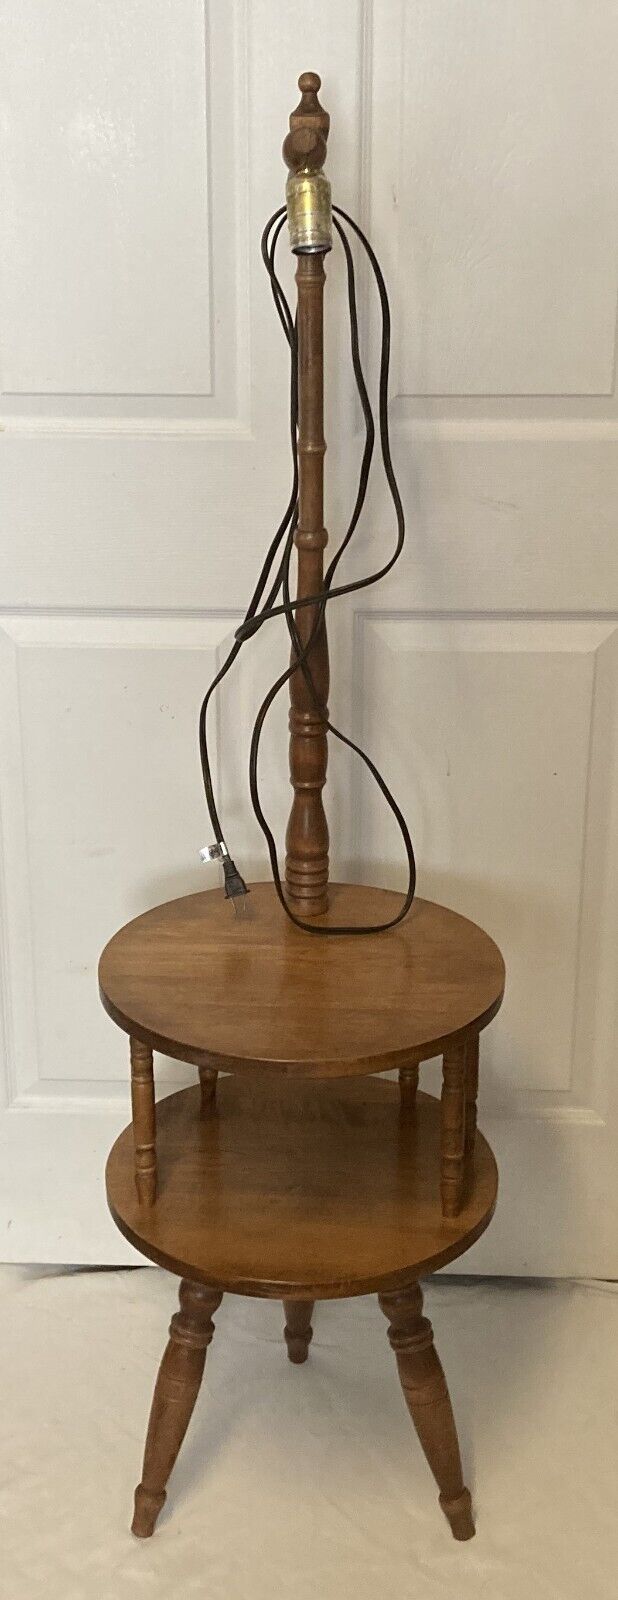 Vintage Mid Century Modern Floor Lamp Walnut Wood Side Table with Shelf - Rare